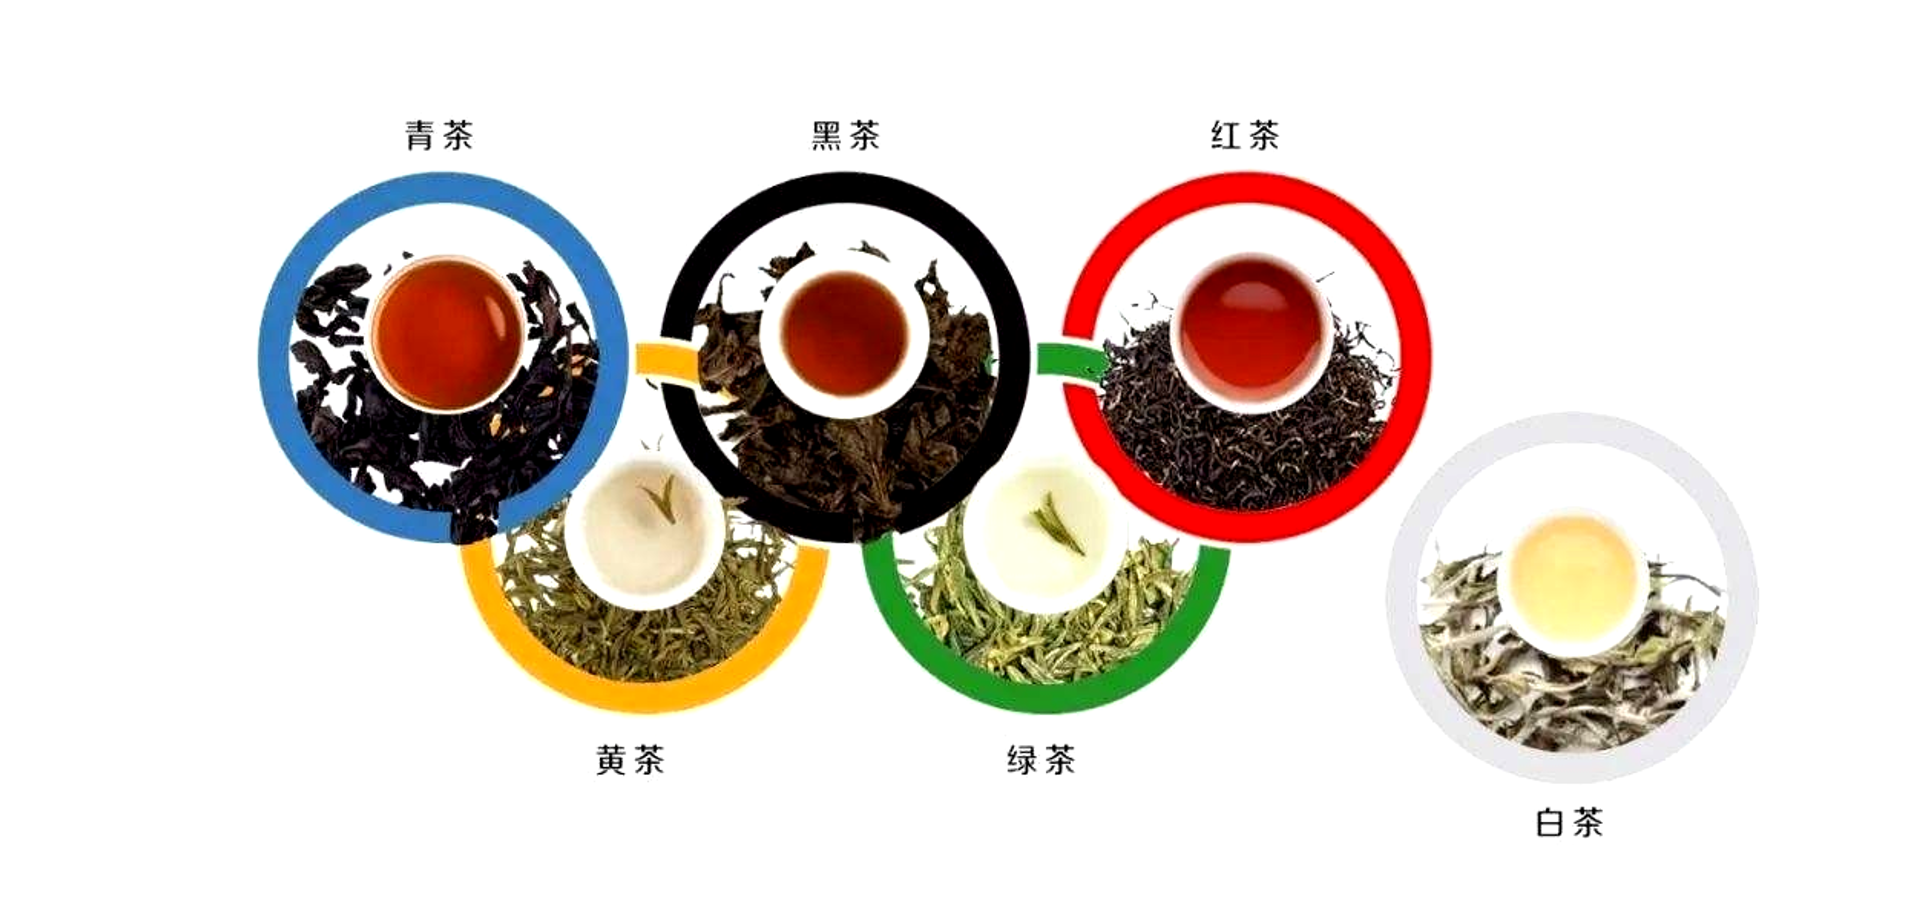 六大茶类到底有什么不为人知的区别？带你一探究竟 醉品茶城-茶叶、茶具一站式网上购物商城:铁观音,金骏眉,红茶,绿茶,大红袍,普洱茶,茶具